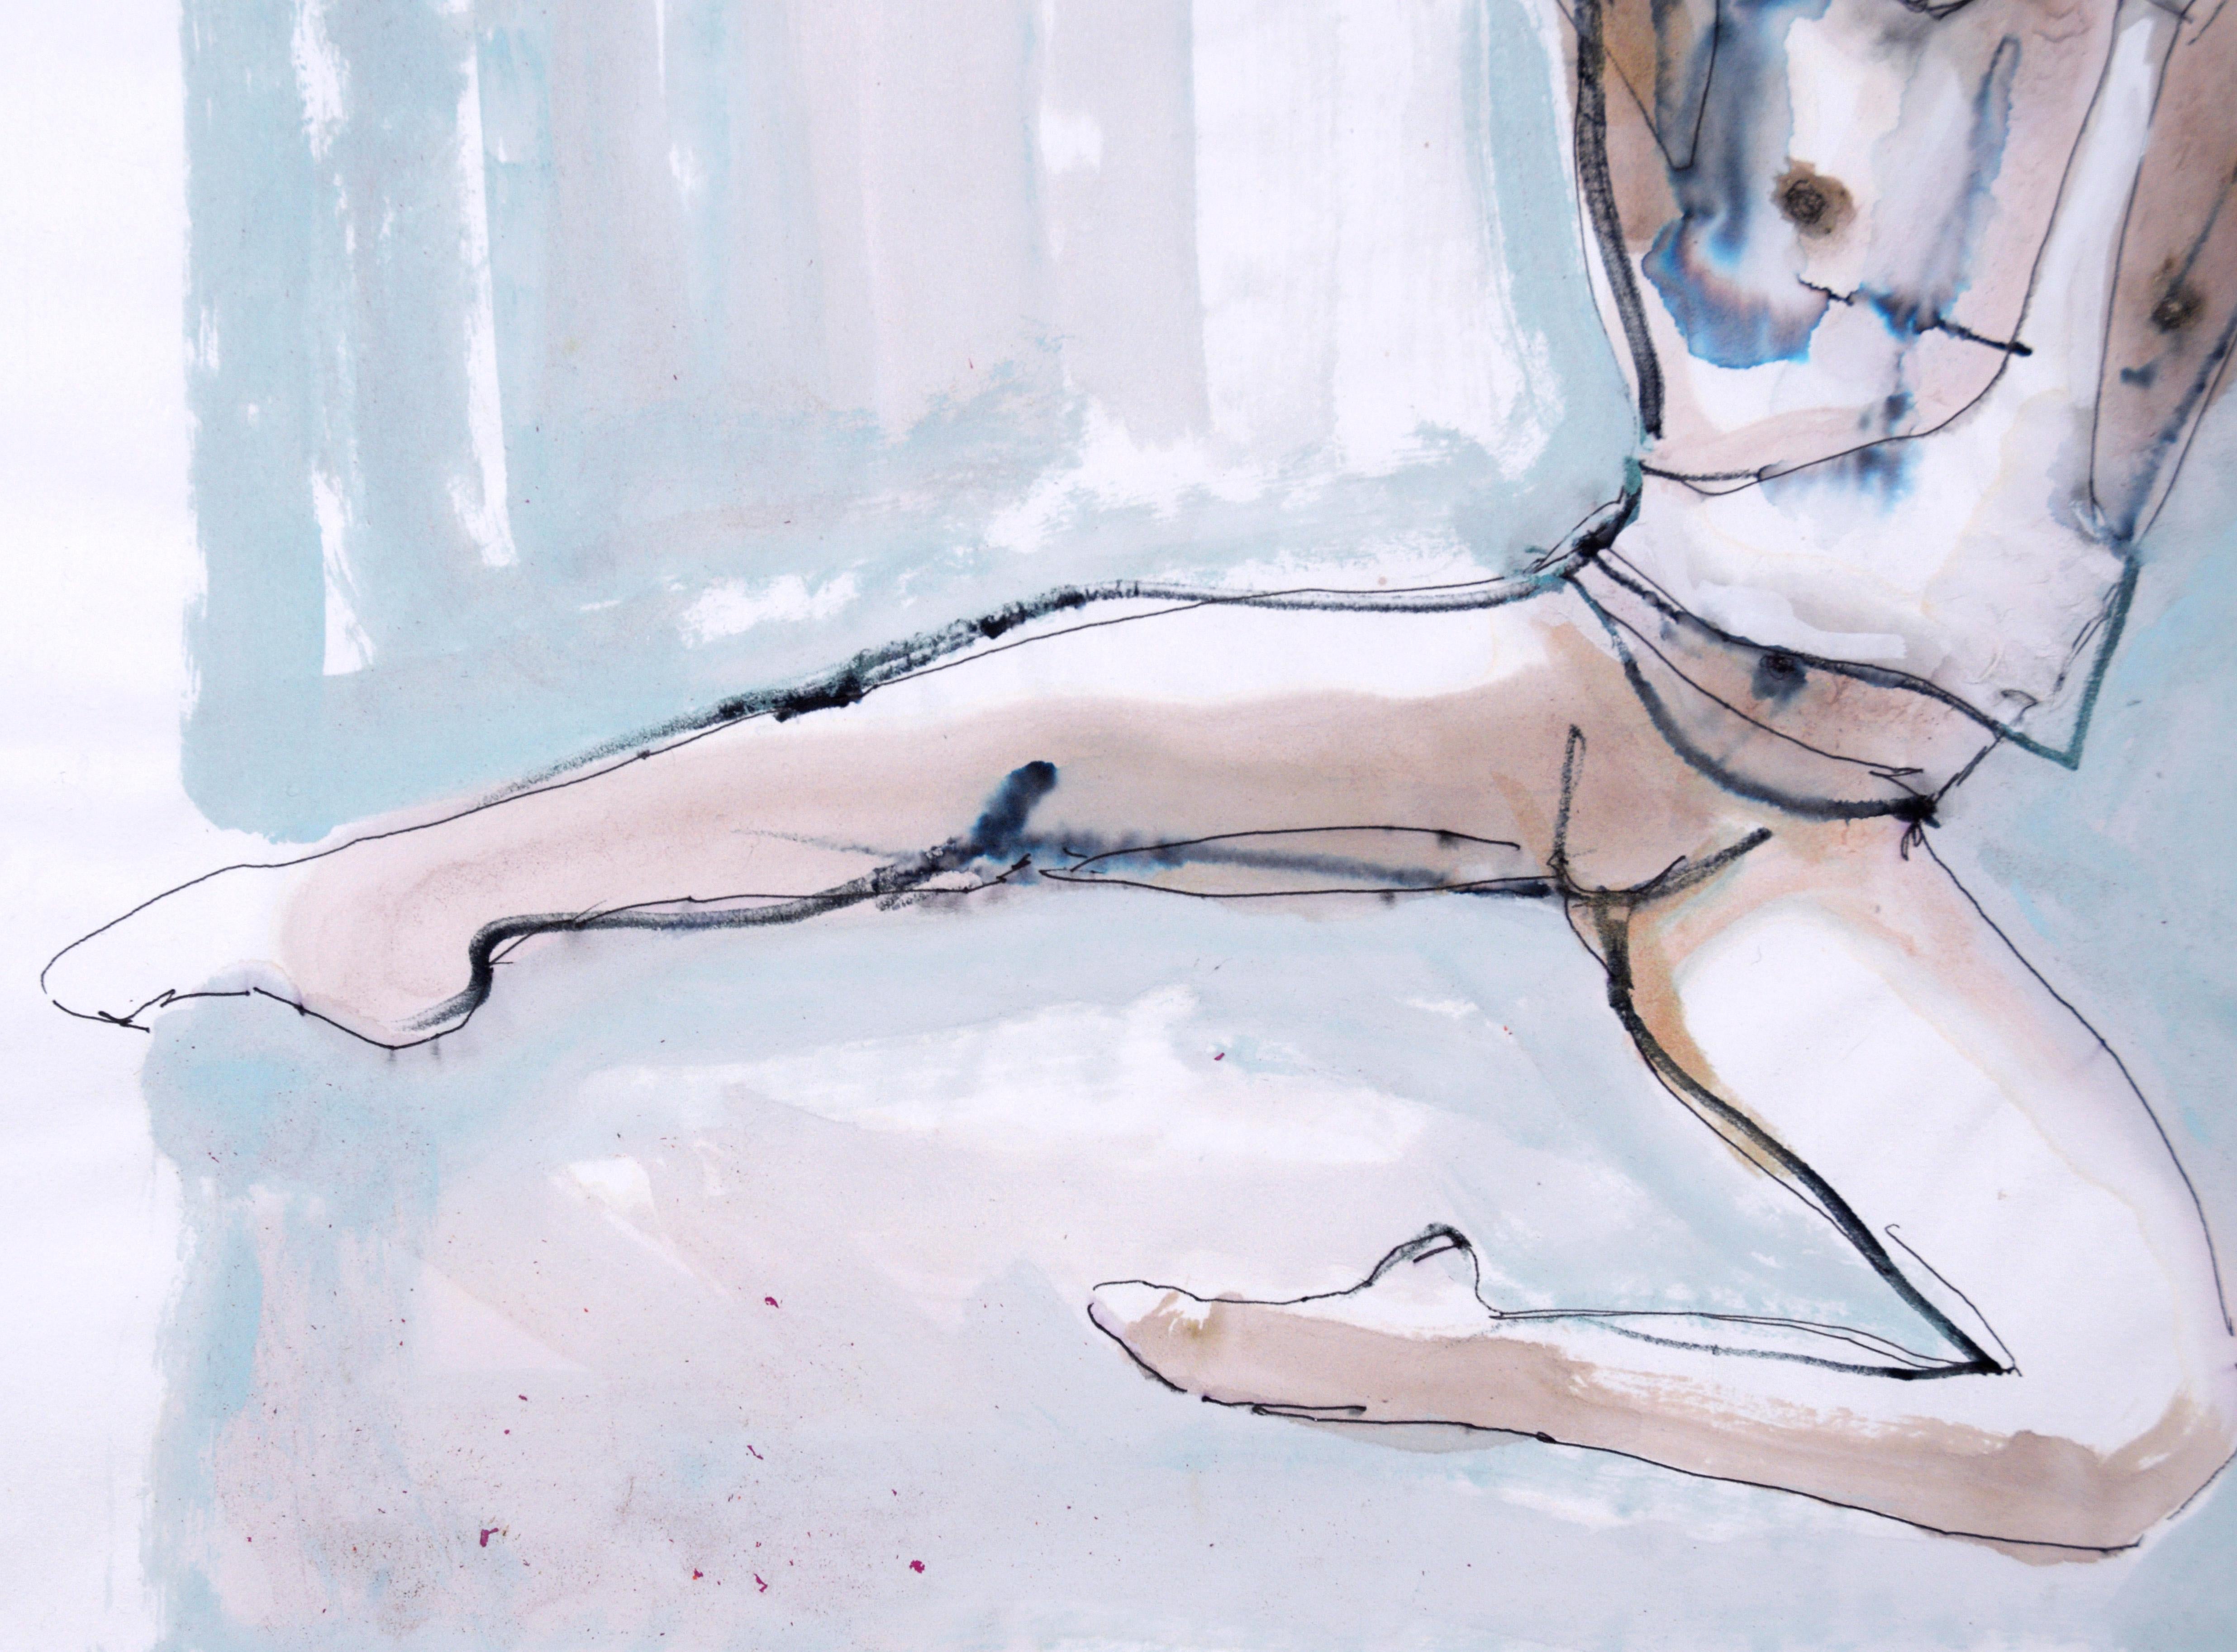 Danseuse de ballet « Apollo » à incrustation de chaînes - abstrait figuratif sur papier 

Cette peinture abstraite figurative dynamique de Marc Foster Grant (américain, né en 1947) représente le danseur de ballet Chase Finlay, anciennement du New